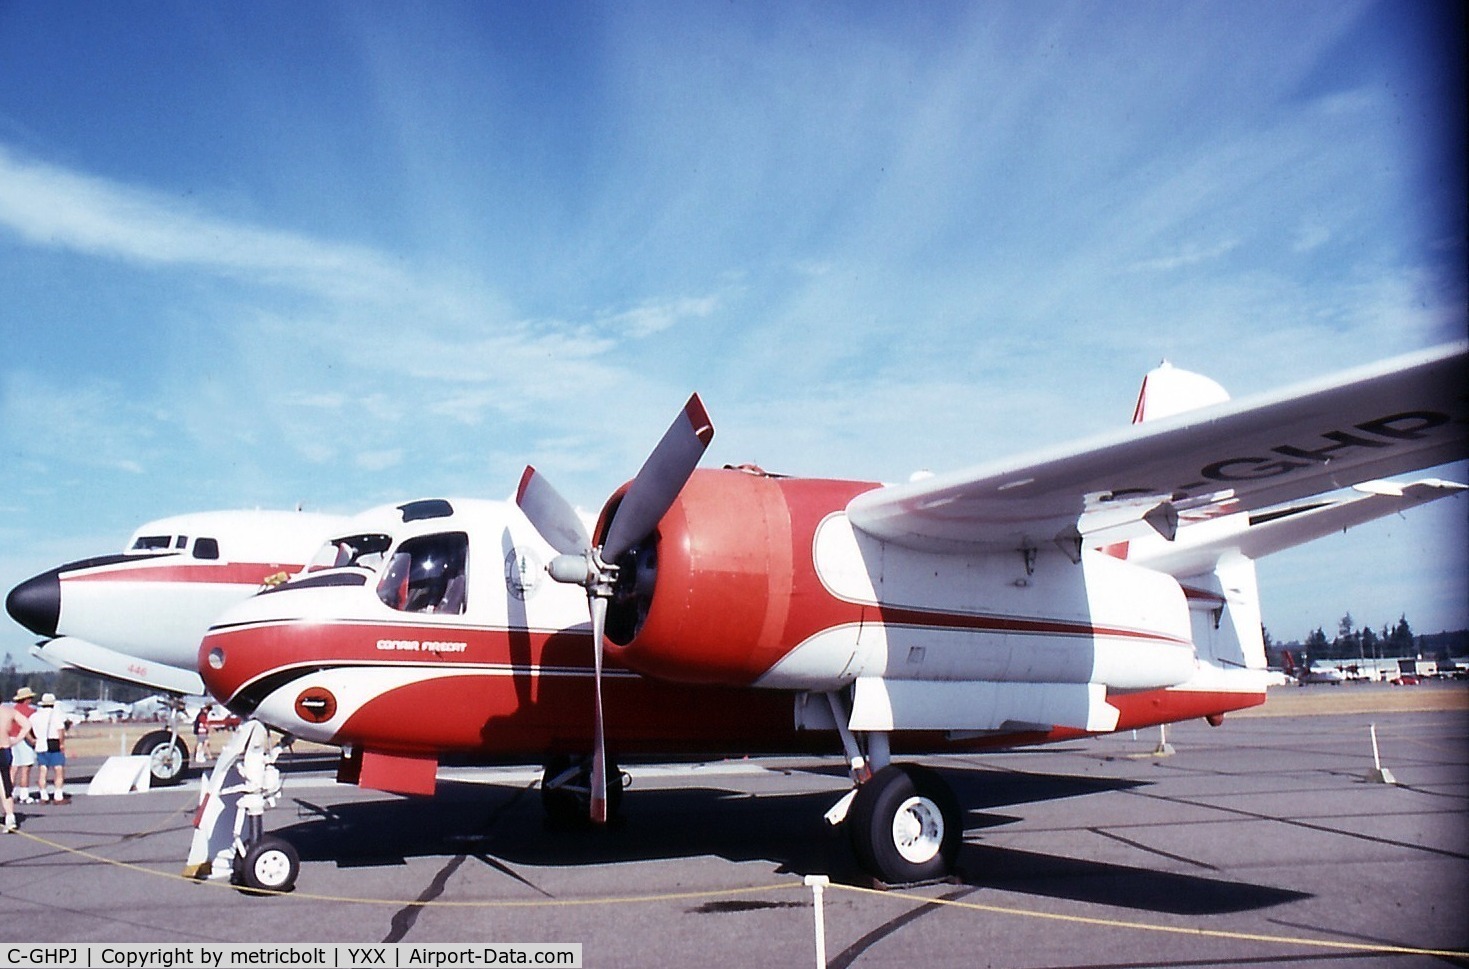 C-GHPJ, 1958 Grumman (Conair) S-2 Firecat (G-89) C/N 022 (136600 MSN 509), At the 1996 Abbotsford Air Show